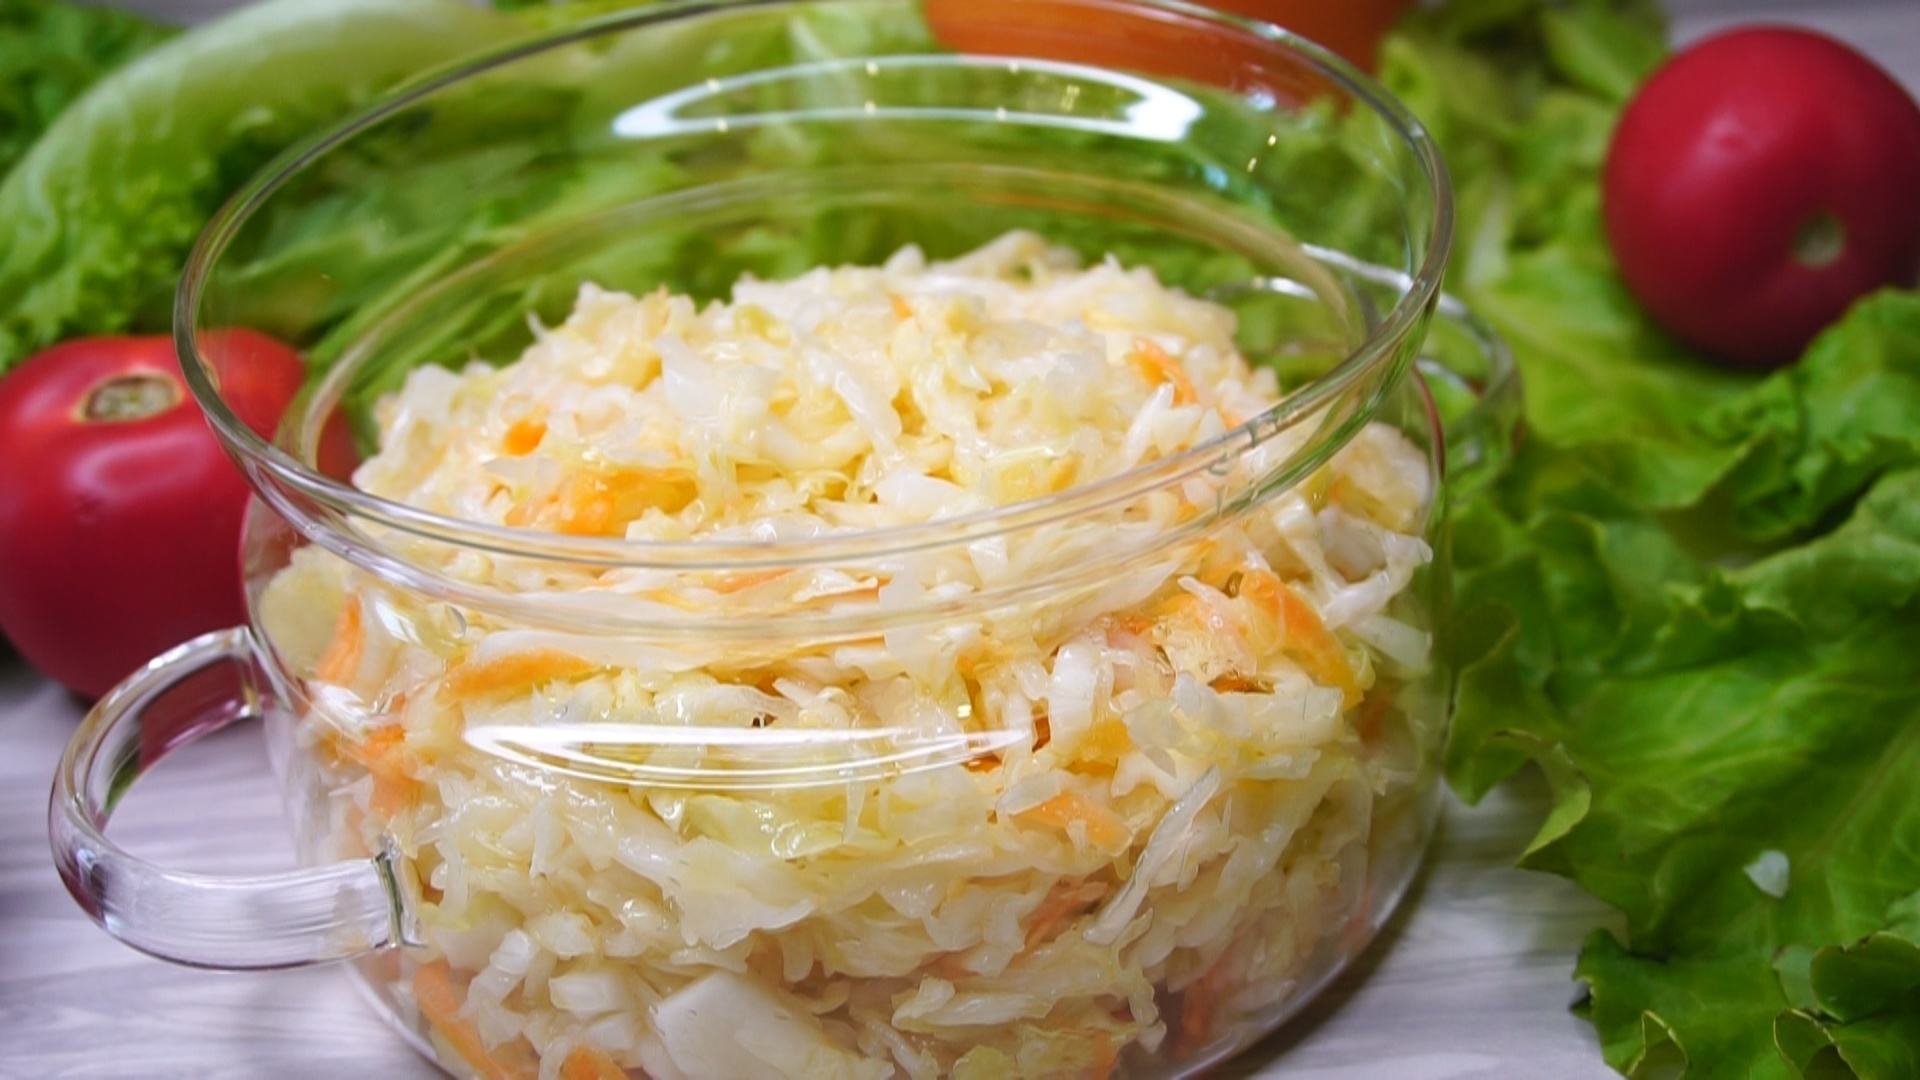 Салат капустный как в столовой с морковью рецепт фото